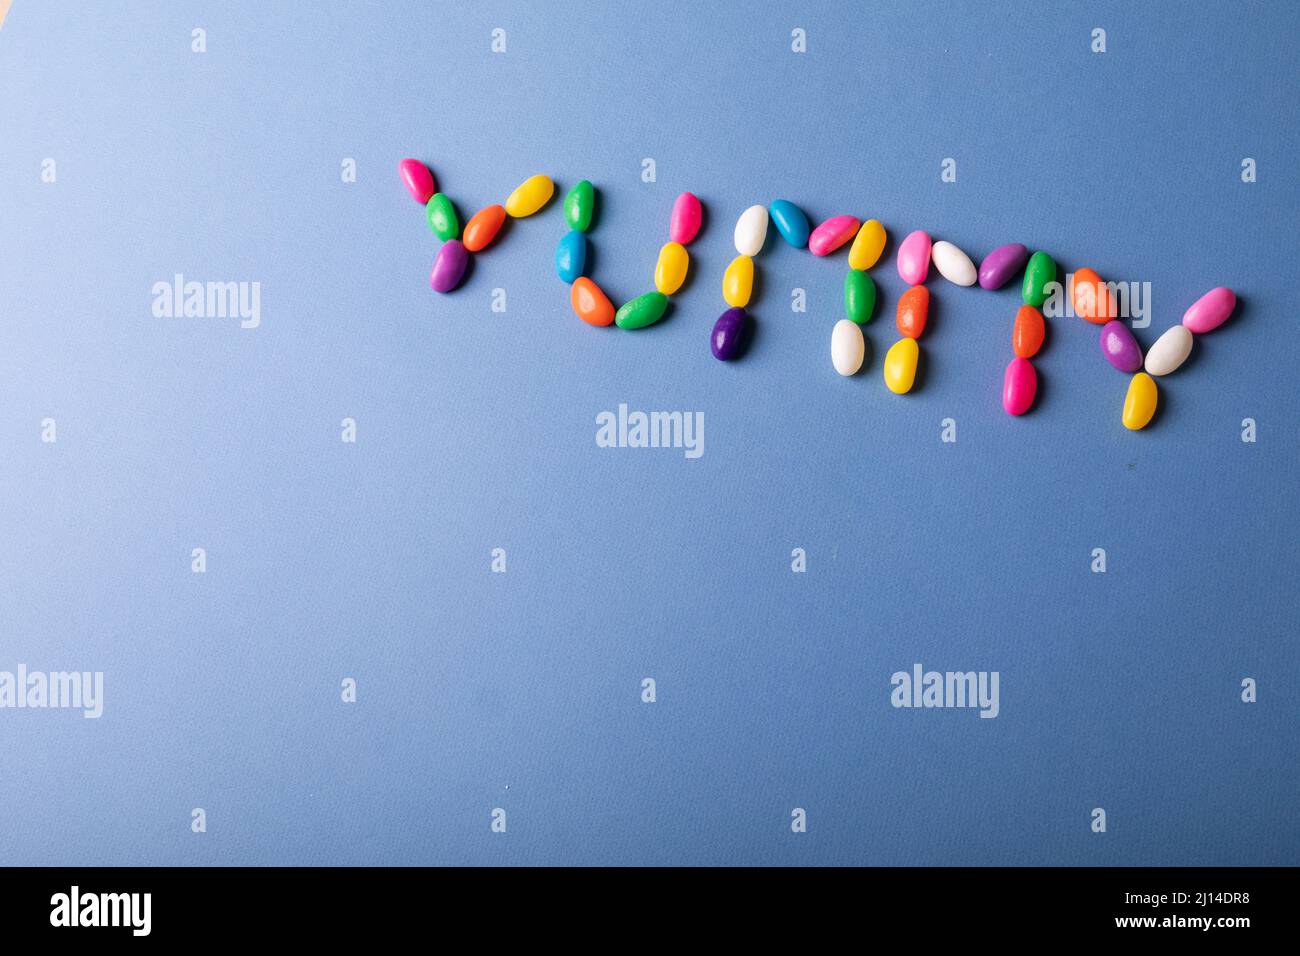 Vista aérea de la palabra deliciosa dispuesta de coloridos caramelos sobre fondo azul sobre espacio de copia Foto de stock